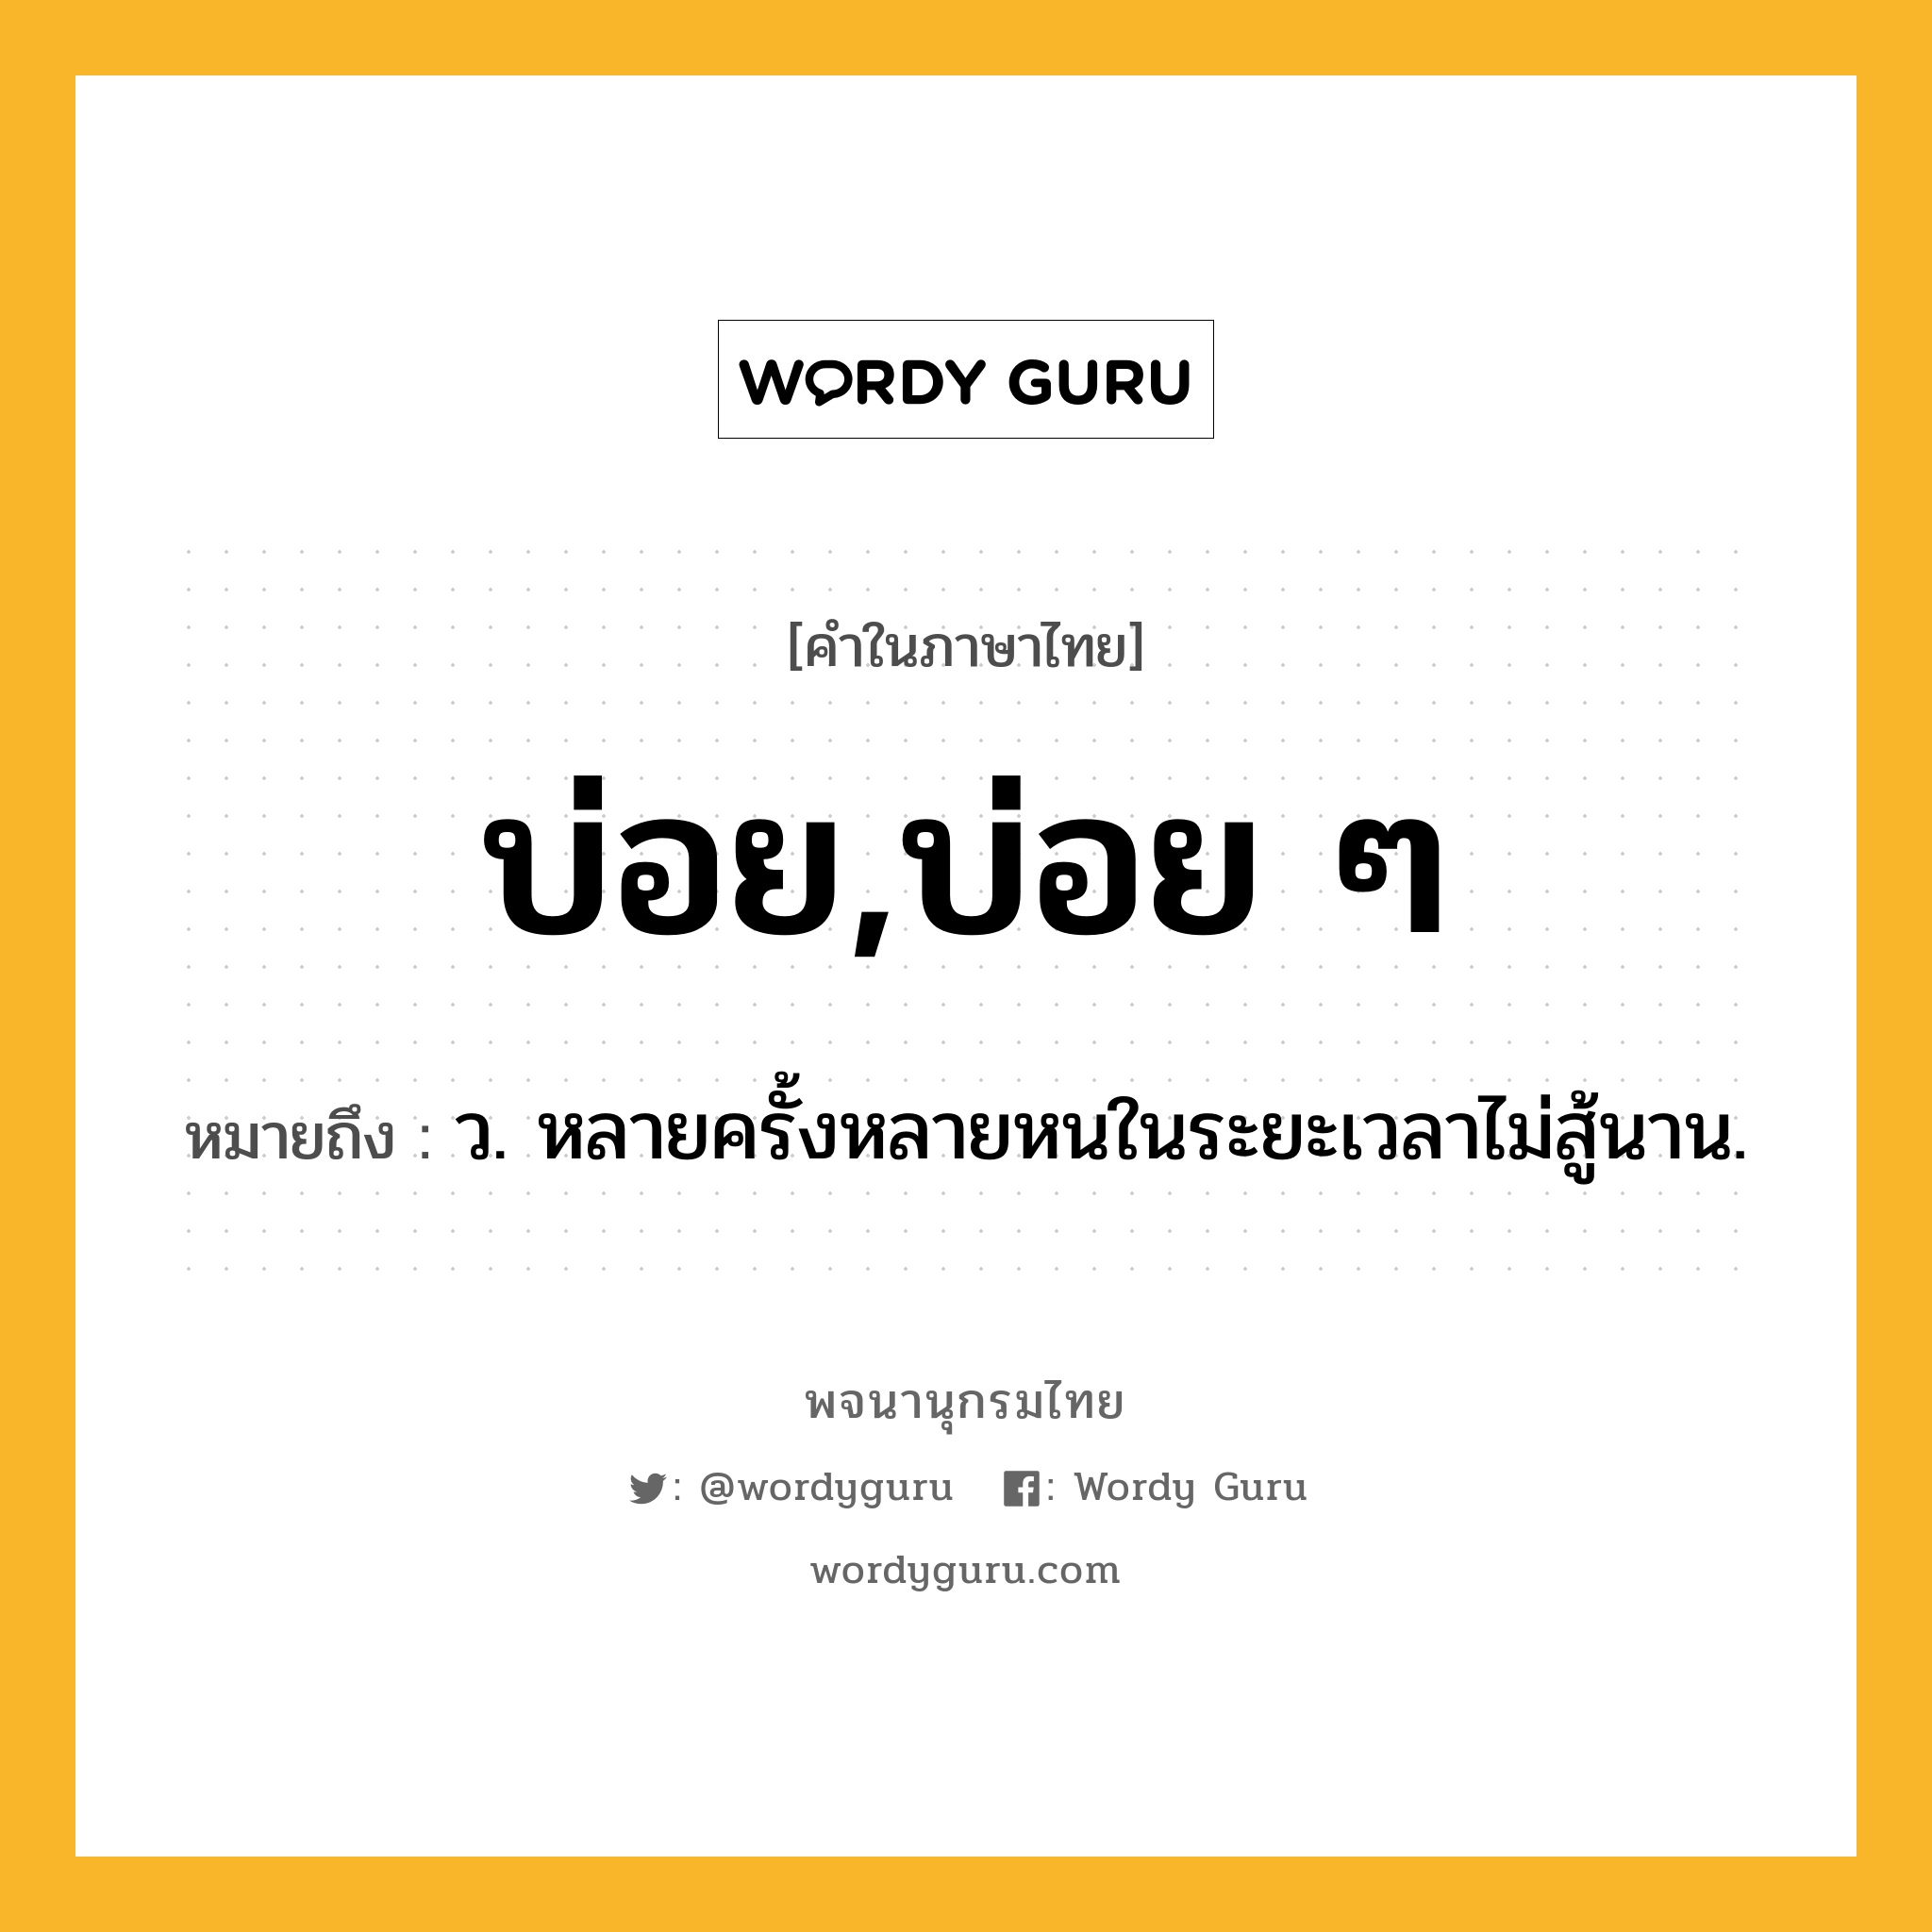 บ่อย,บ่อย ๆ หมายถึงอะไร?, คำในภาษาไทย บ่อย,บ่อย ๆ หมายถึง ว. หลายครั้งหลายหนในระยะเวลาไม่สู้นาน.